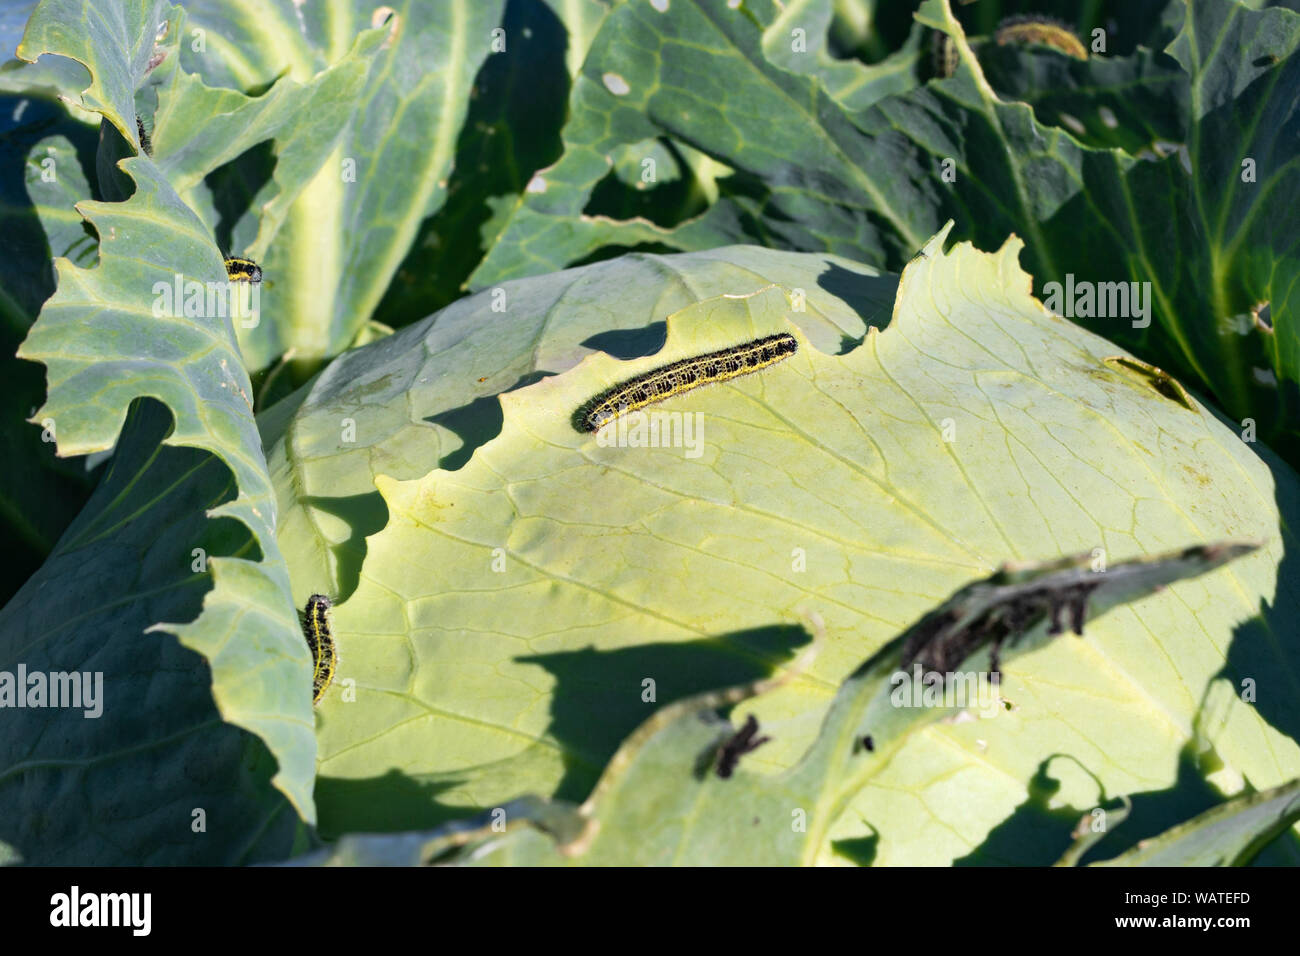 Kohl Schädlingsbekämpfung Raupen essen Kohlblätter. Raupen aus der Großen whit Schmetterling Stockfoto